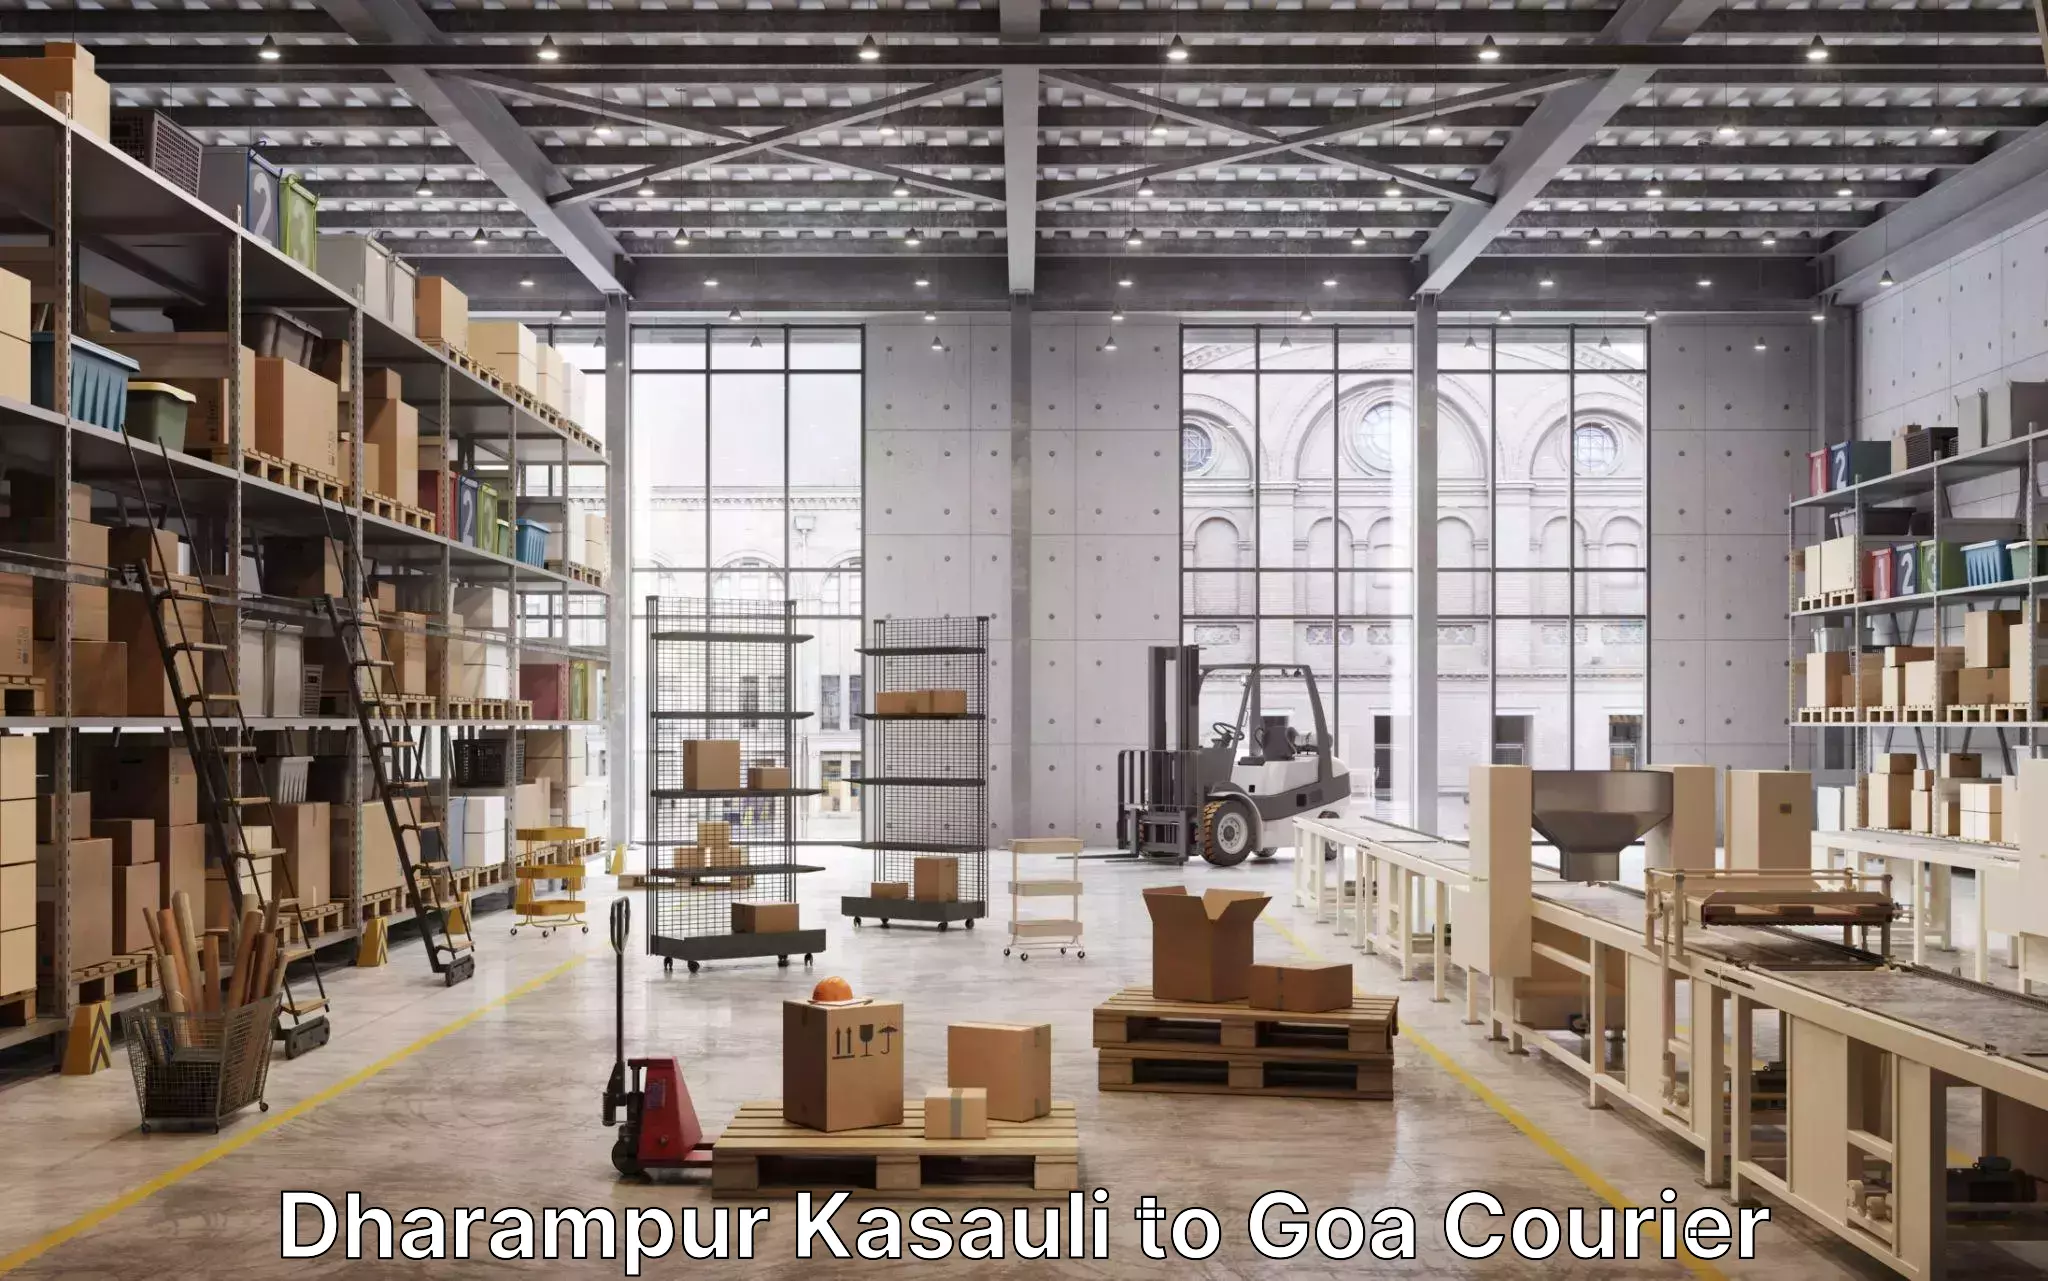 Furniture moving experts Dharampur Kasauli to Panaji